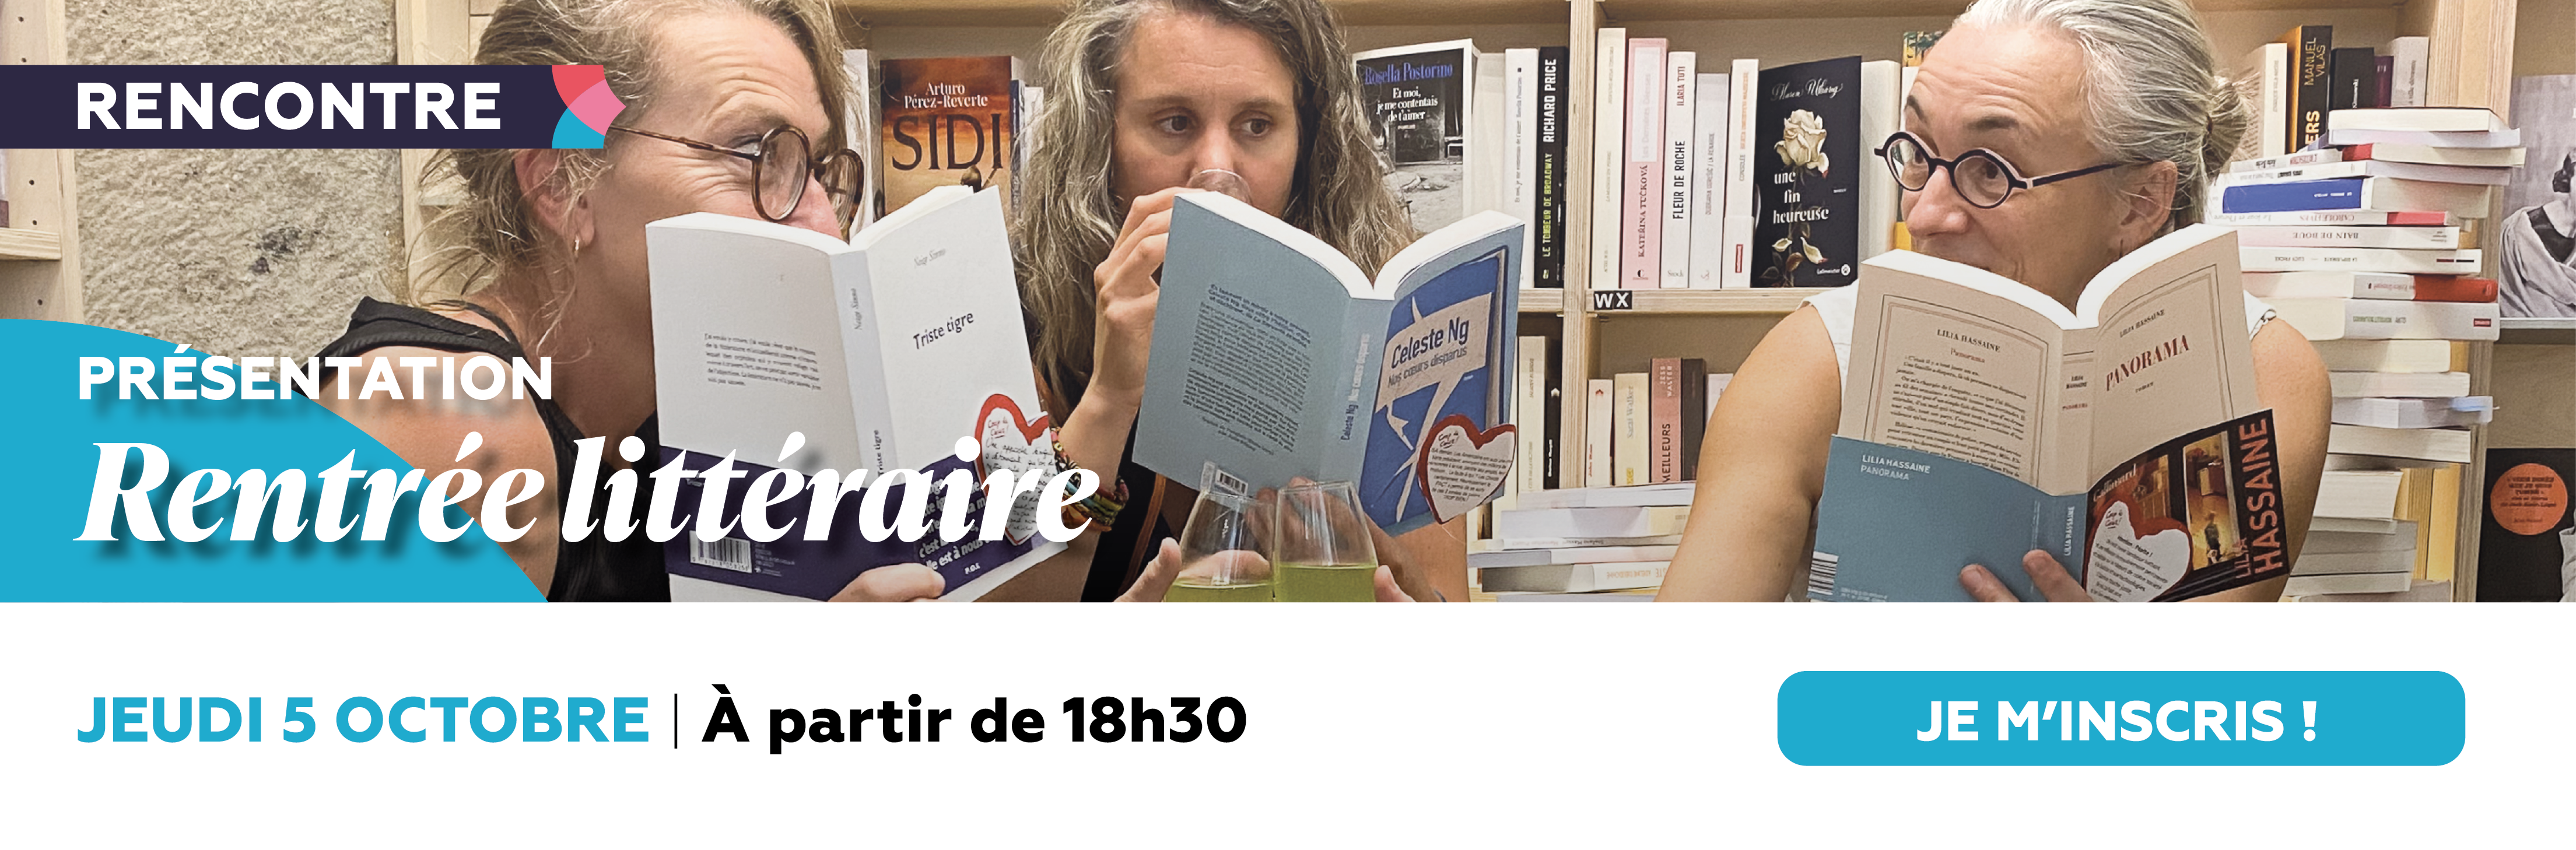 La rentrée littéraire à la Librairie de Paris